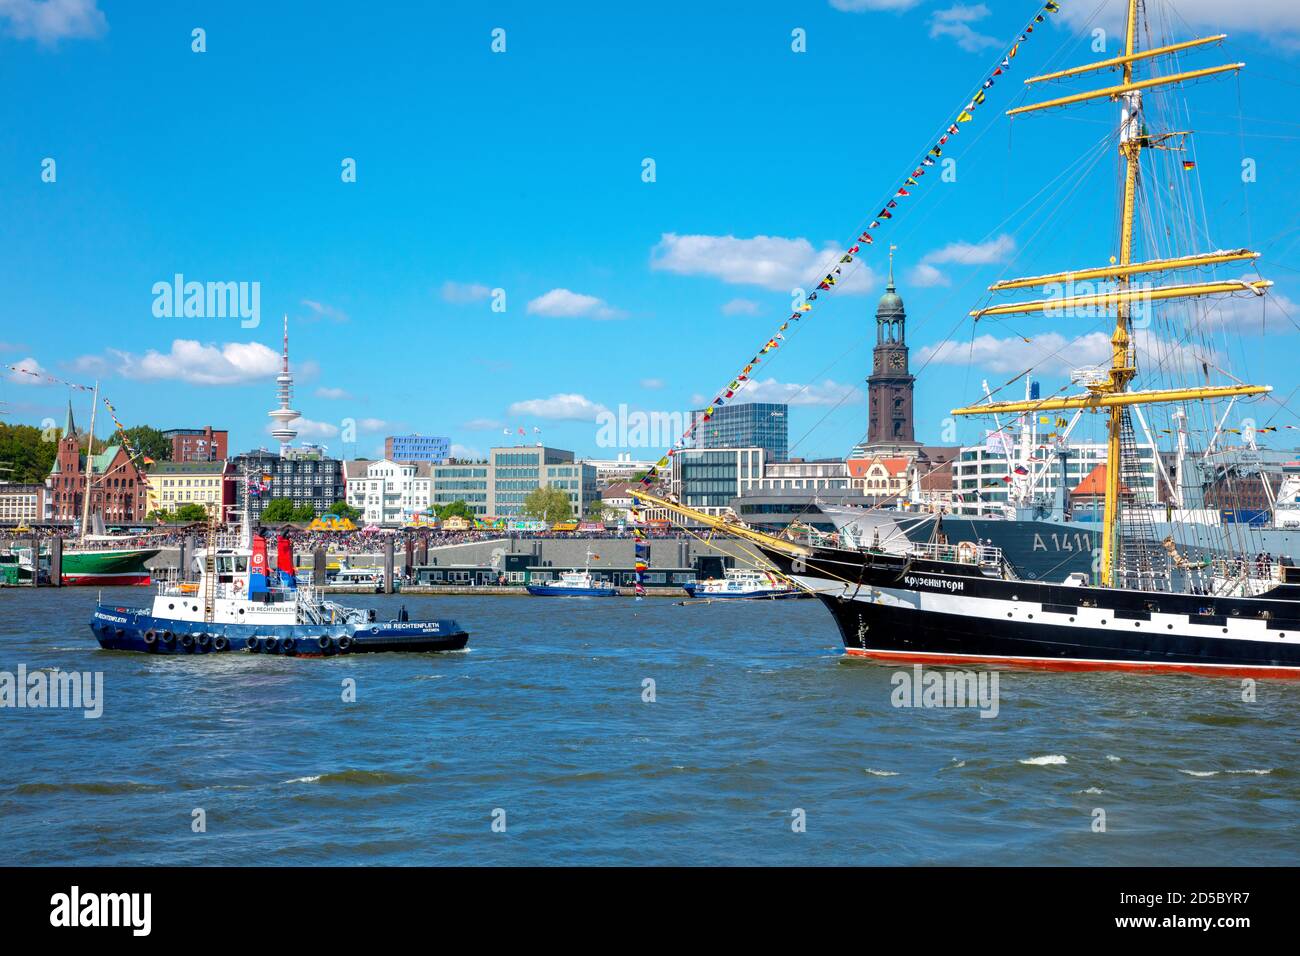 Deutschland, Hansestadt Hamburg, Hamburger Hafengeburtstag 2019, Parade auf der Elbe. Blick auf den Michel. Stock Photo